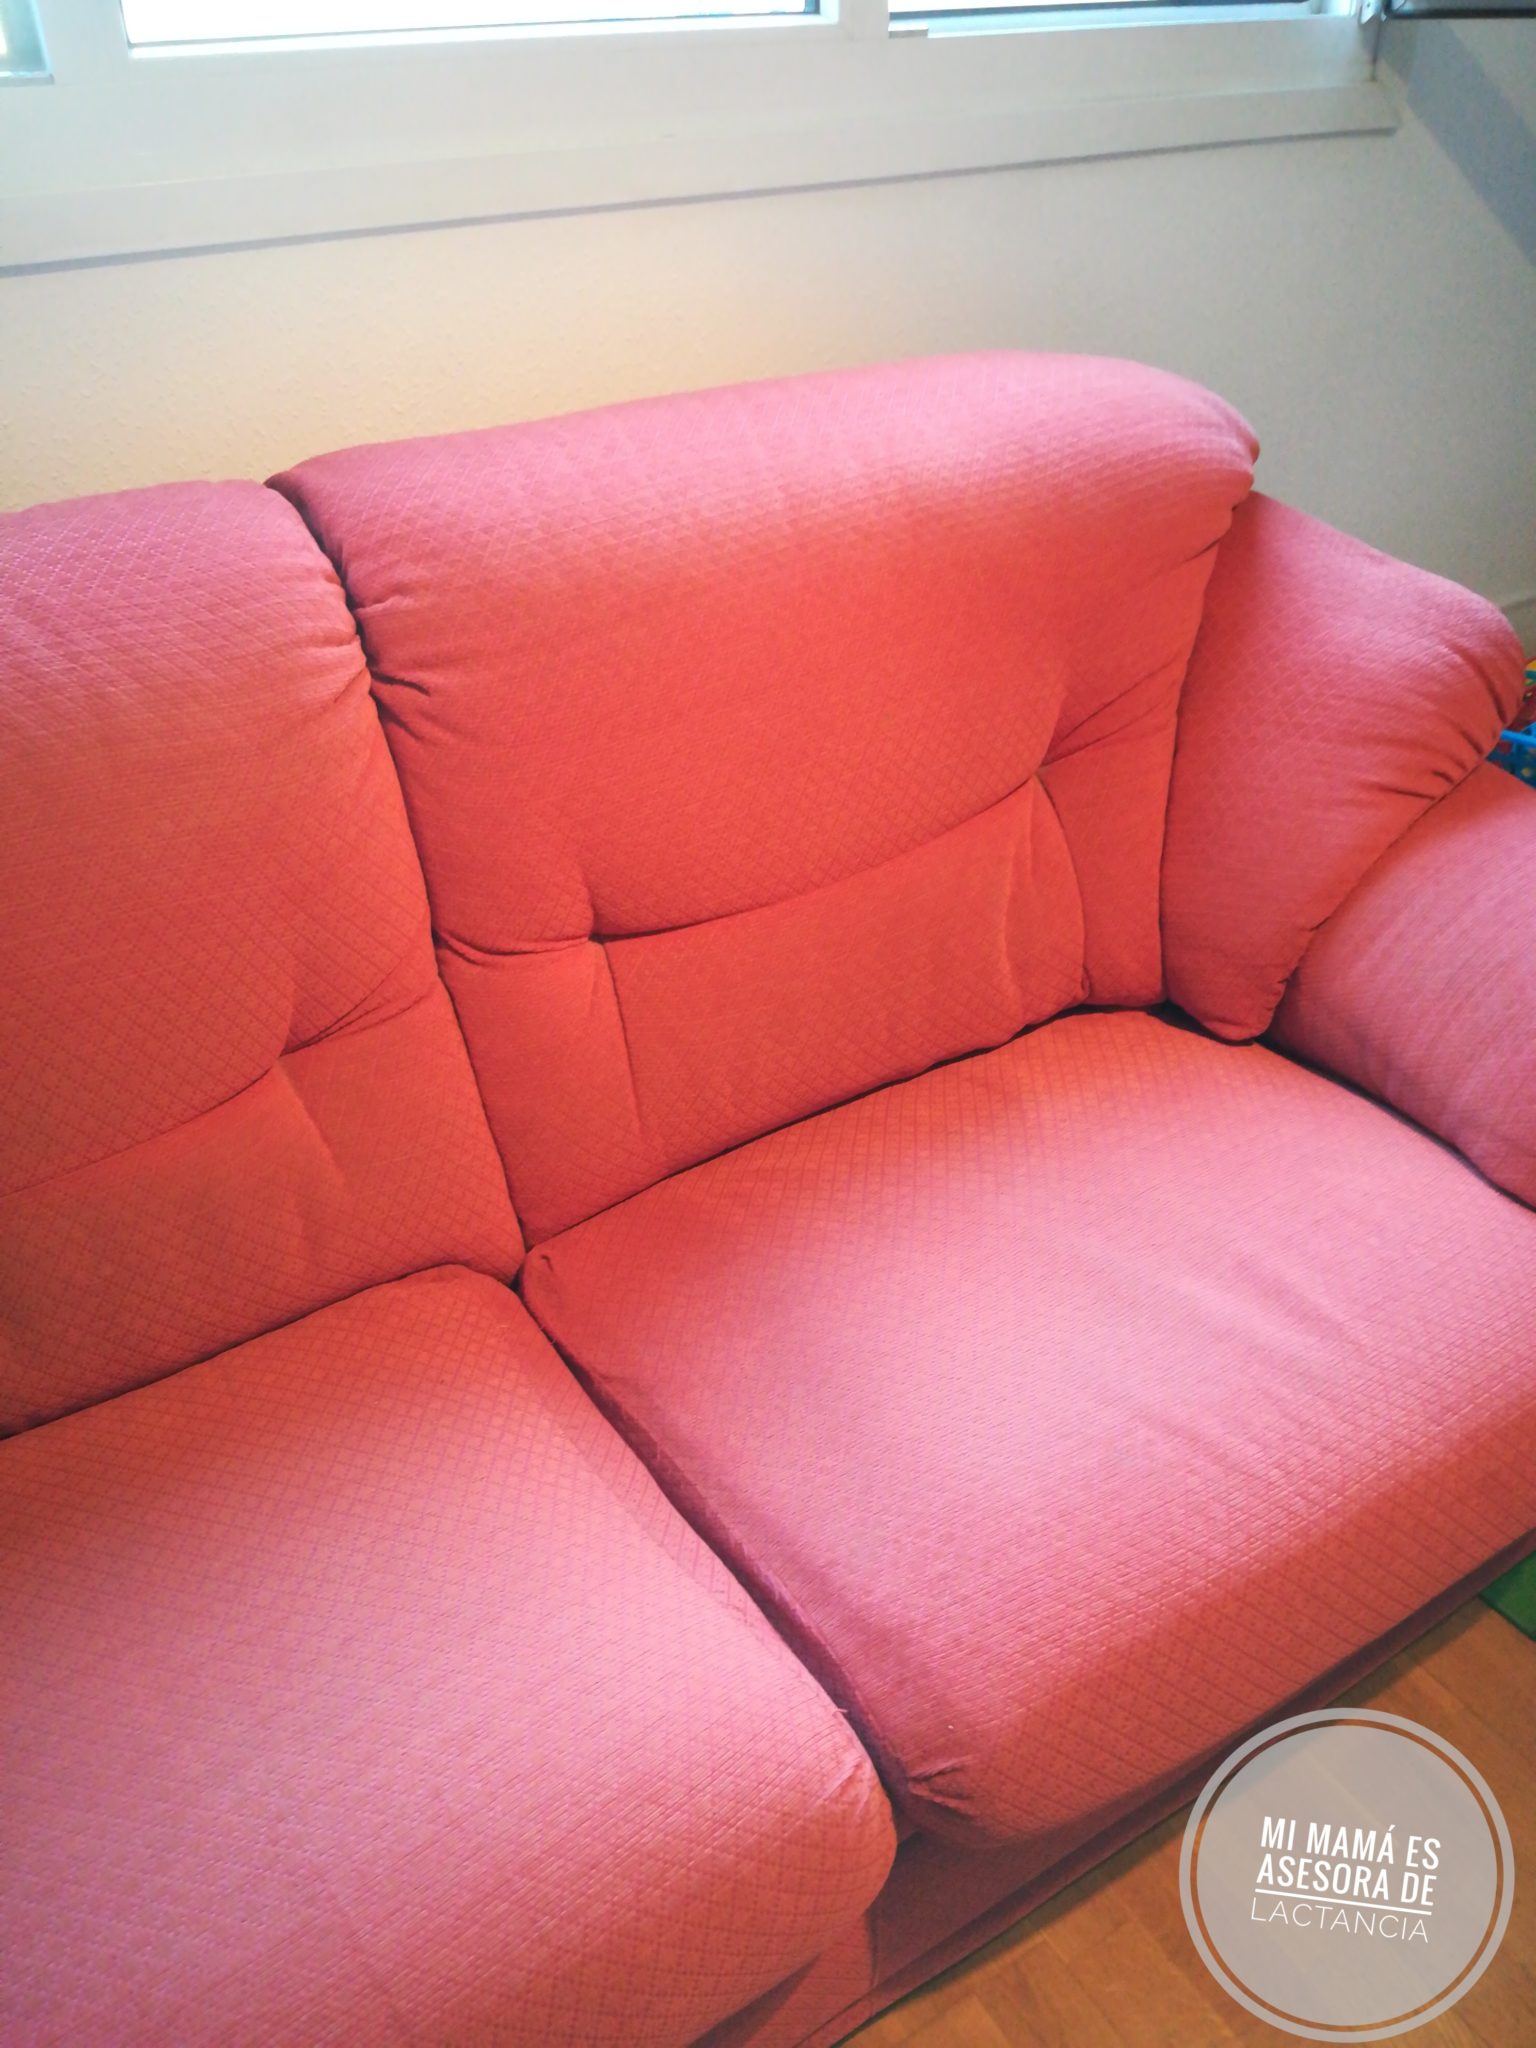 1500922424011 01 - Pintar un mueble con ChalkPaint y tapizado nuevo del sillón.